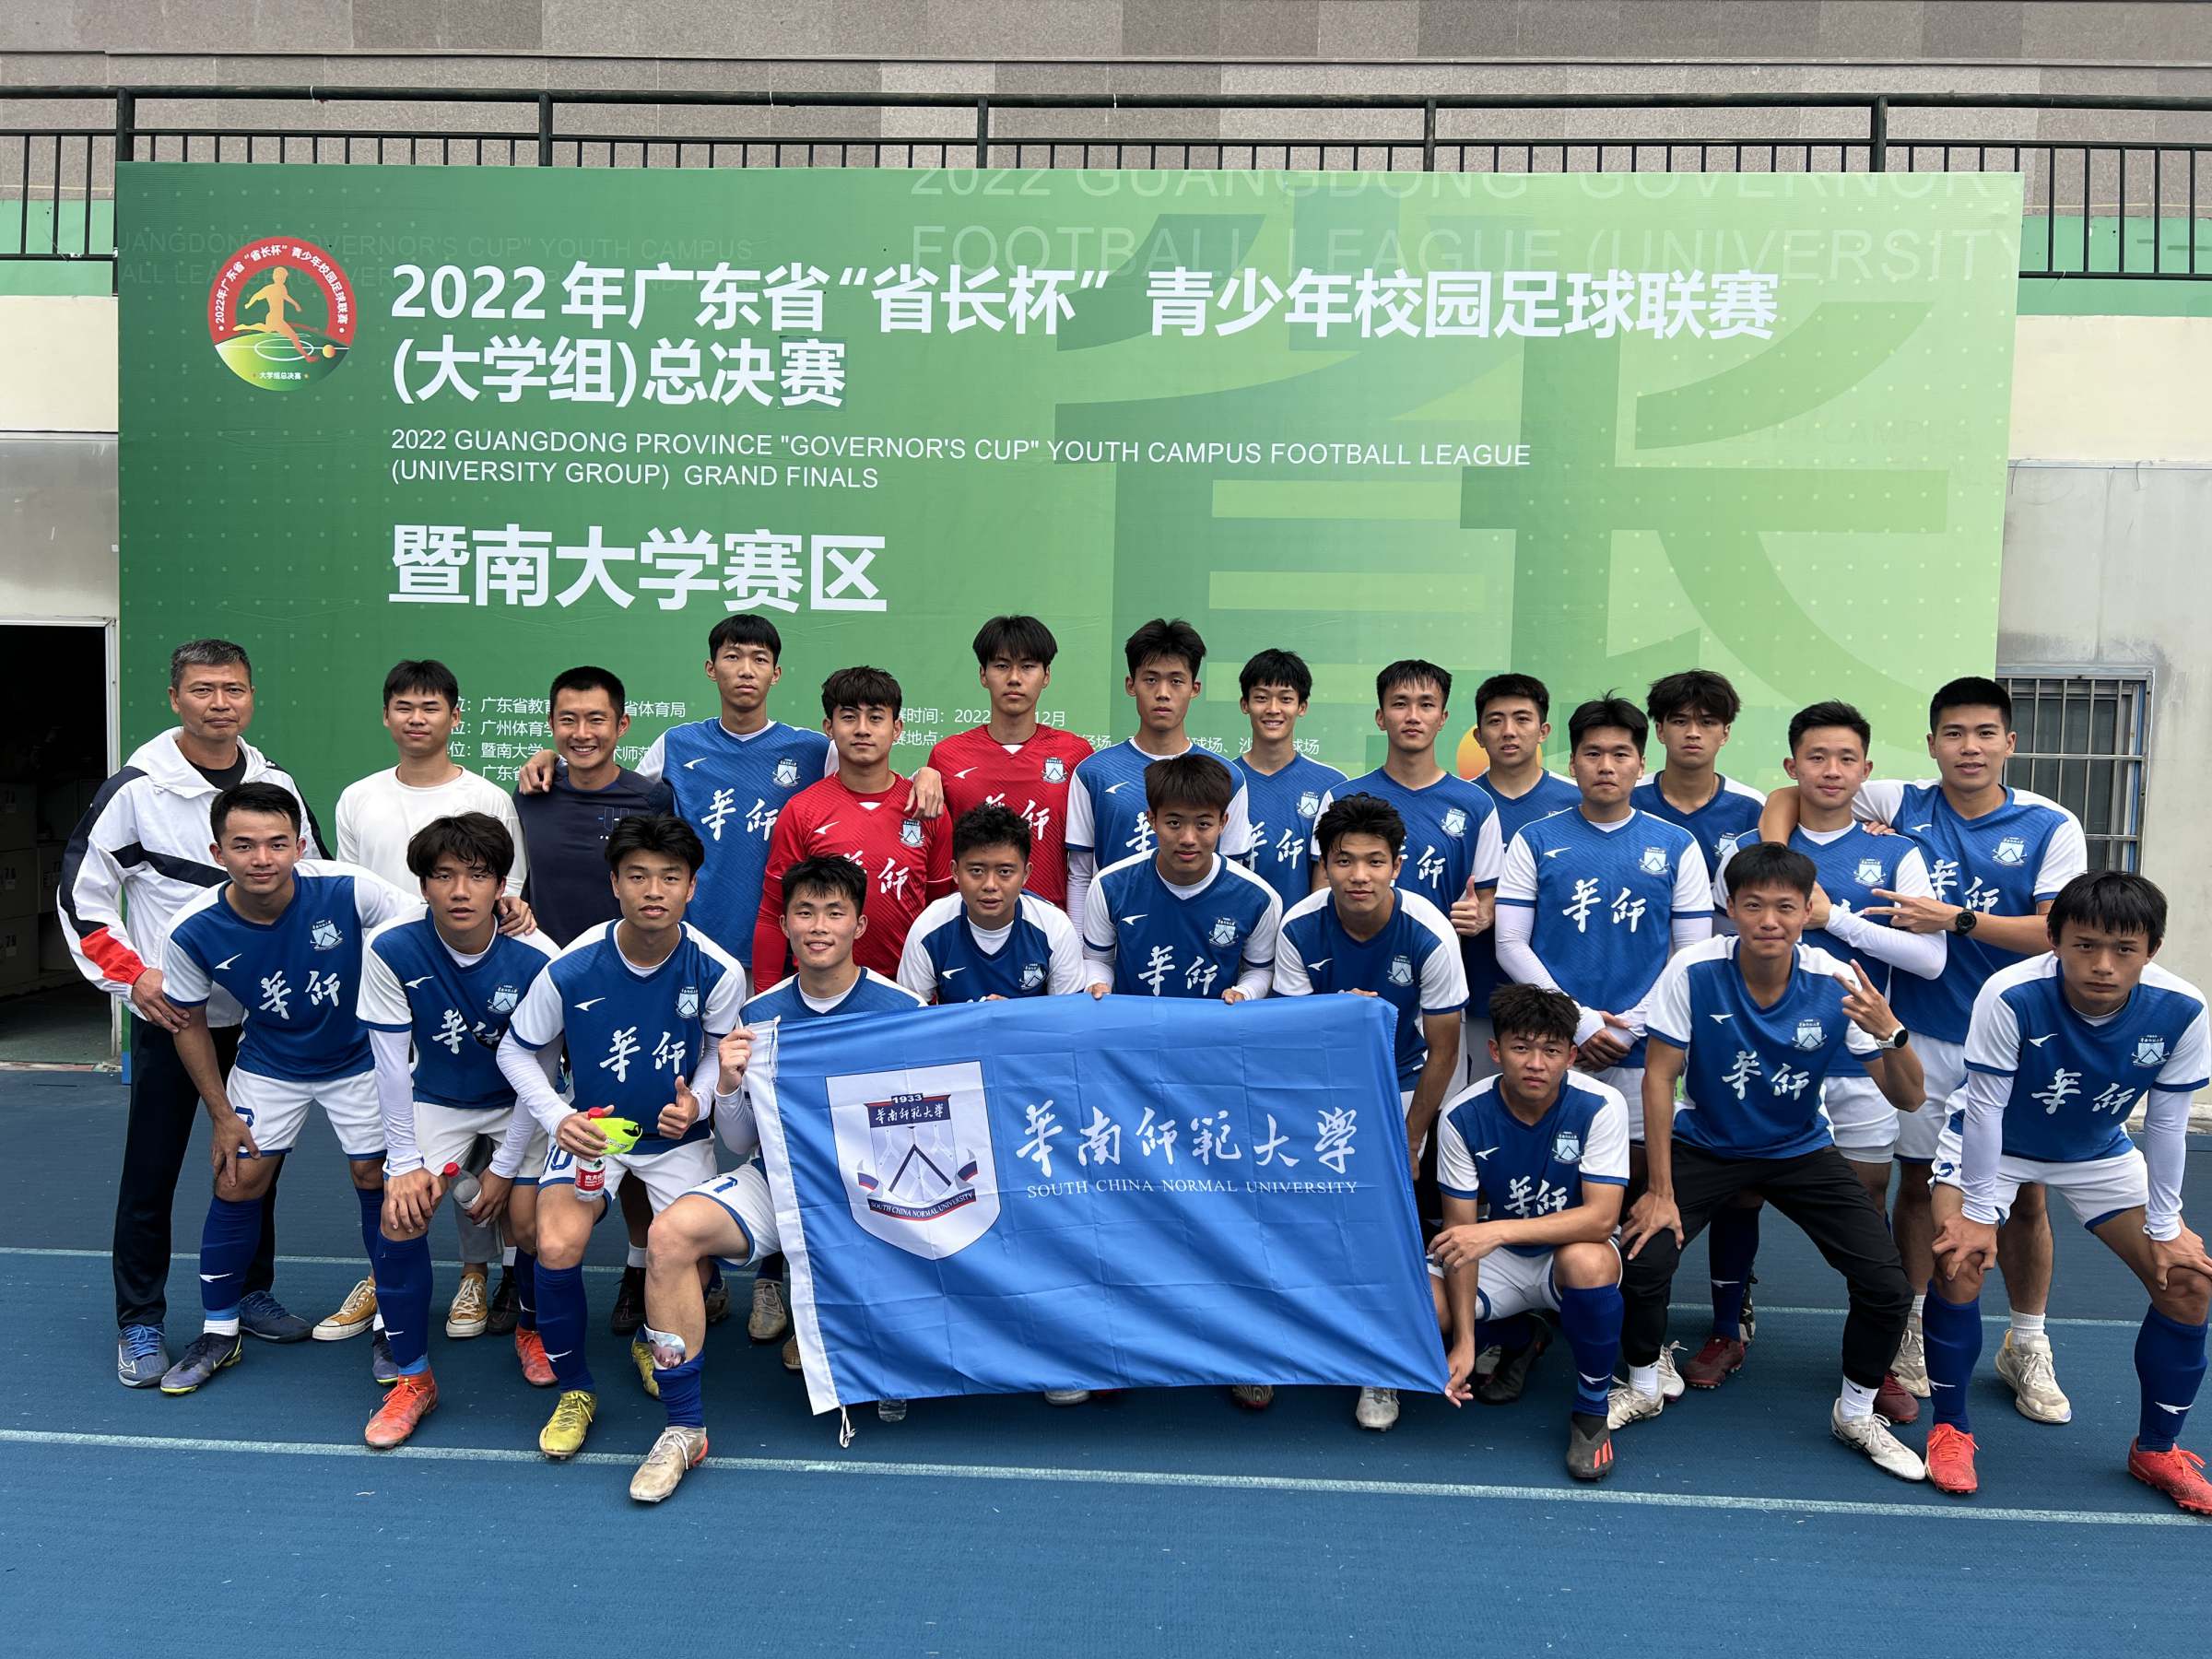 我校男子乙A组足球队勇夺2022年广东省“省长杯”青少年校园足球联赛亚军